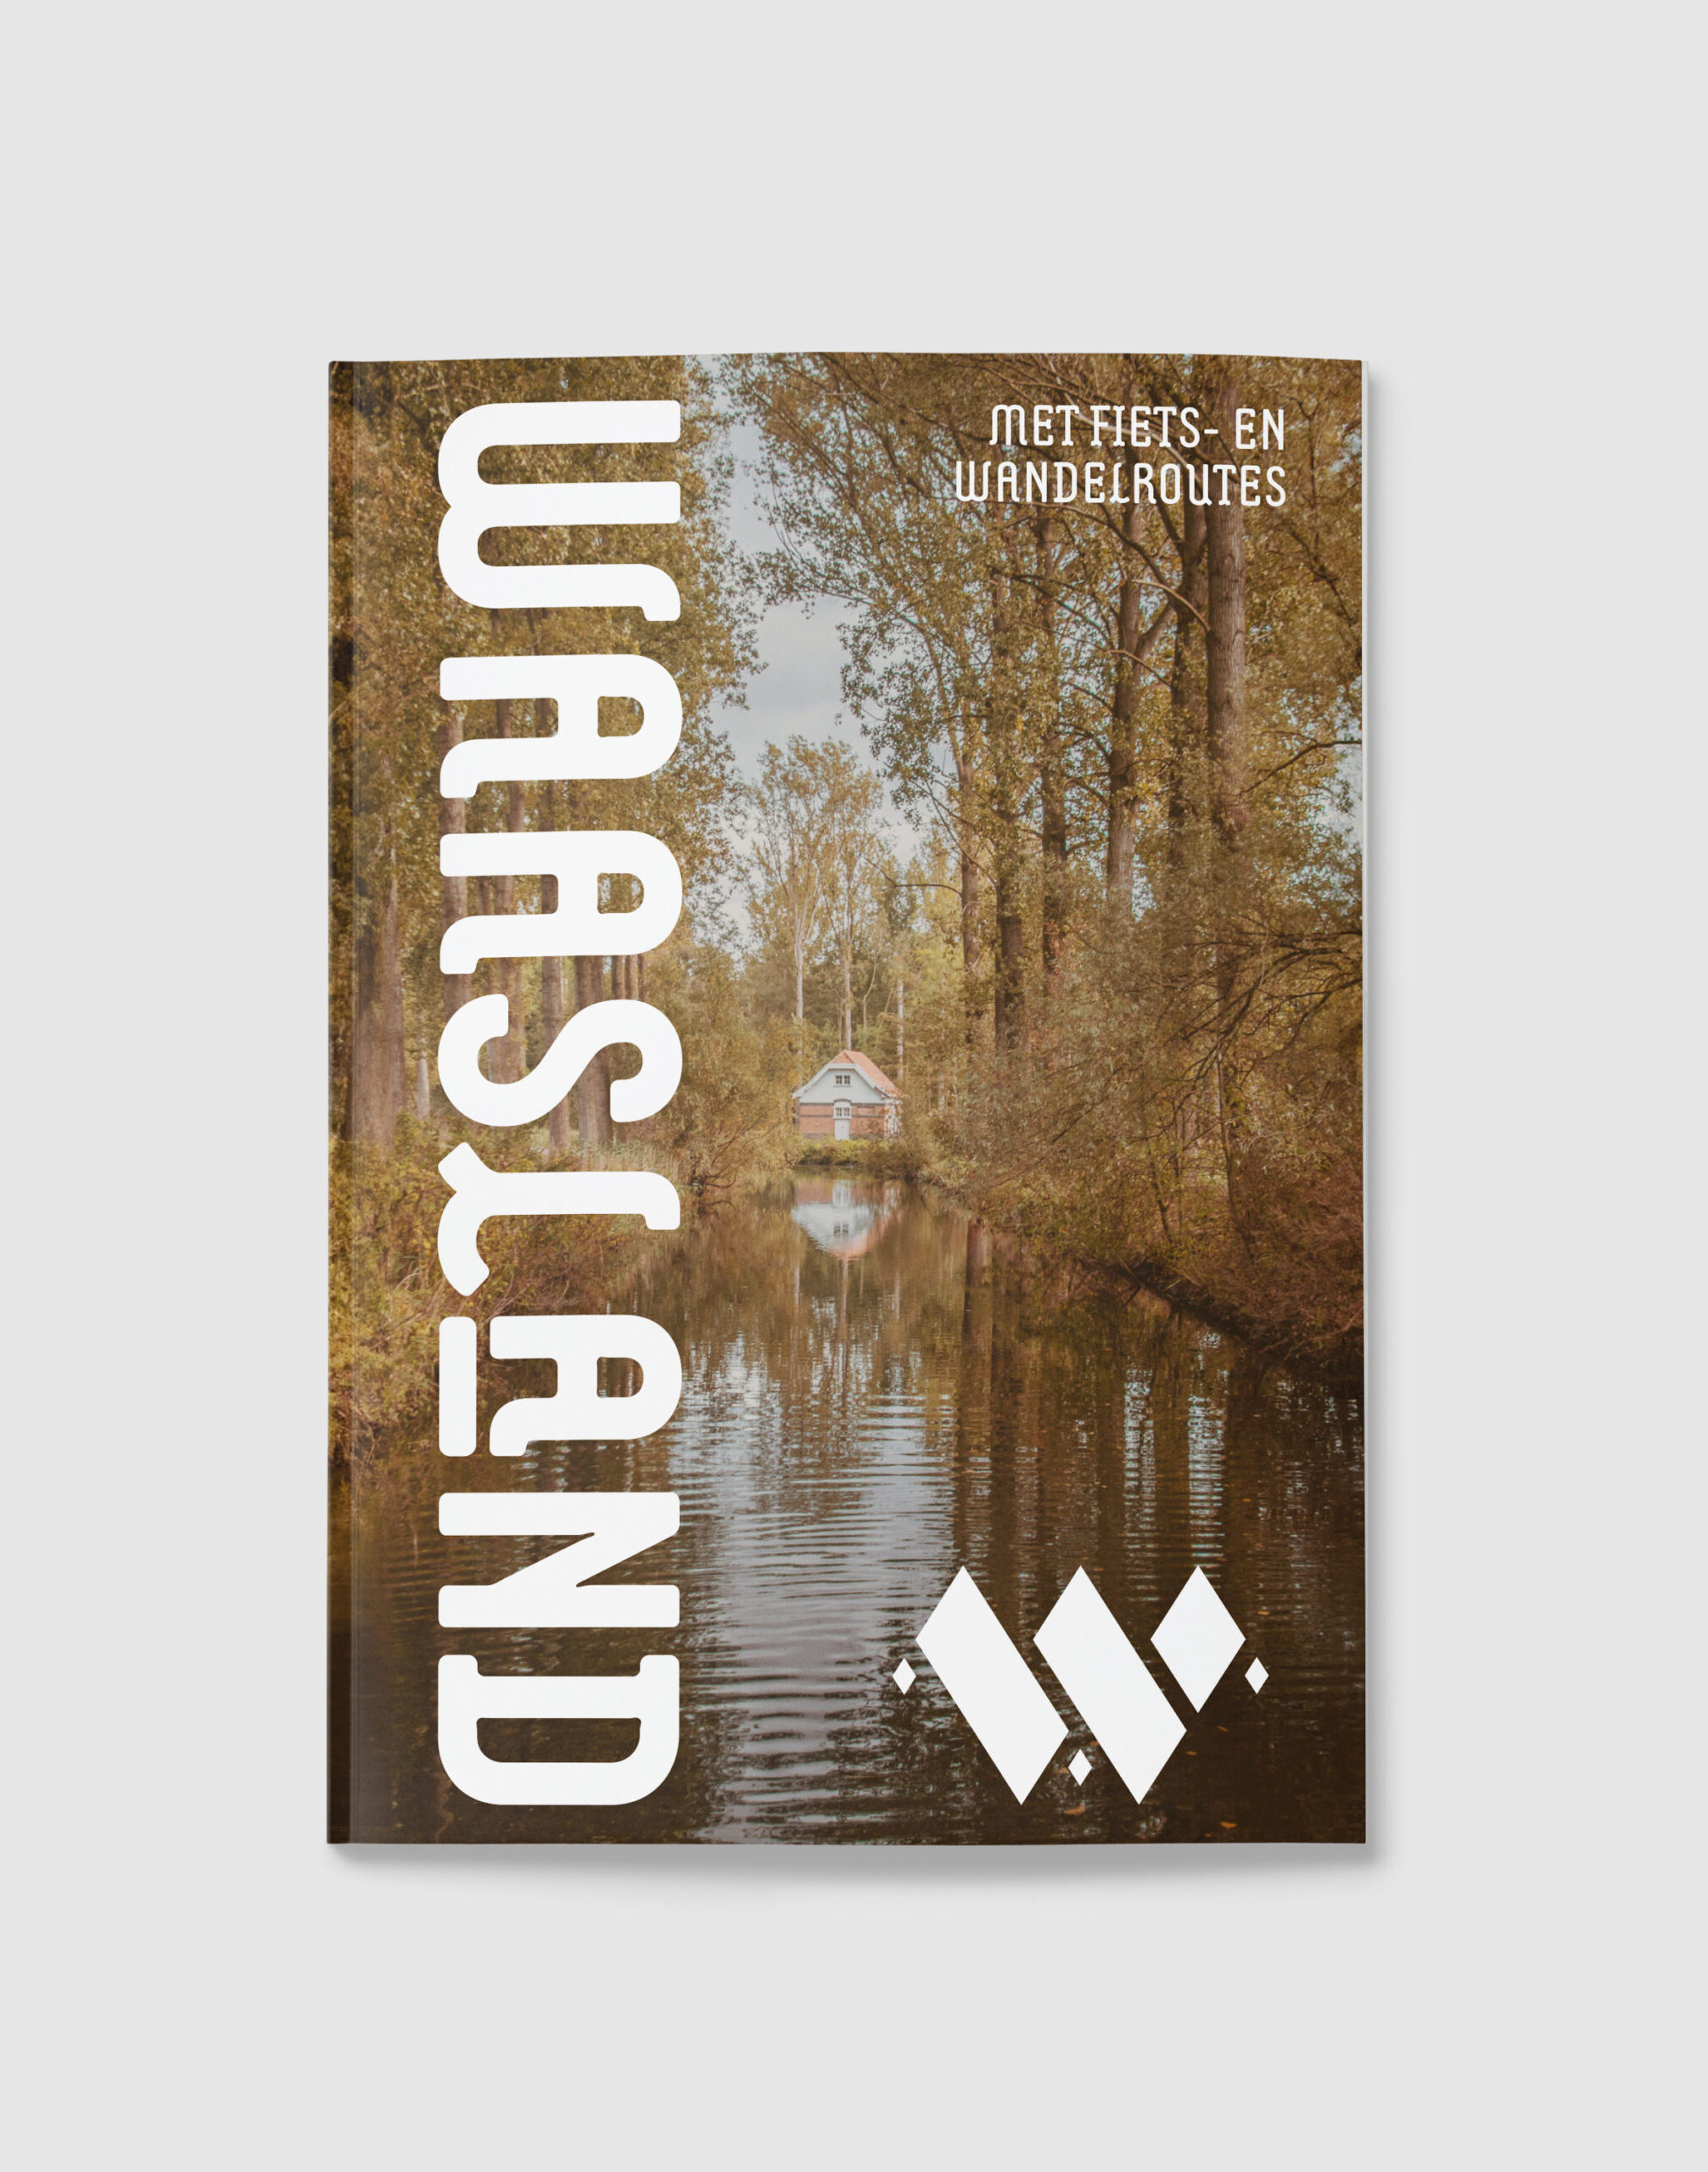 ToerismeWaasland gids cover design front